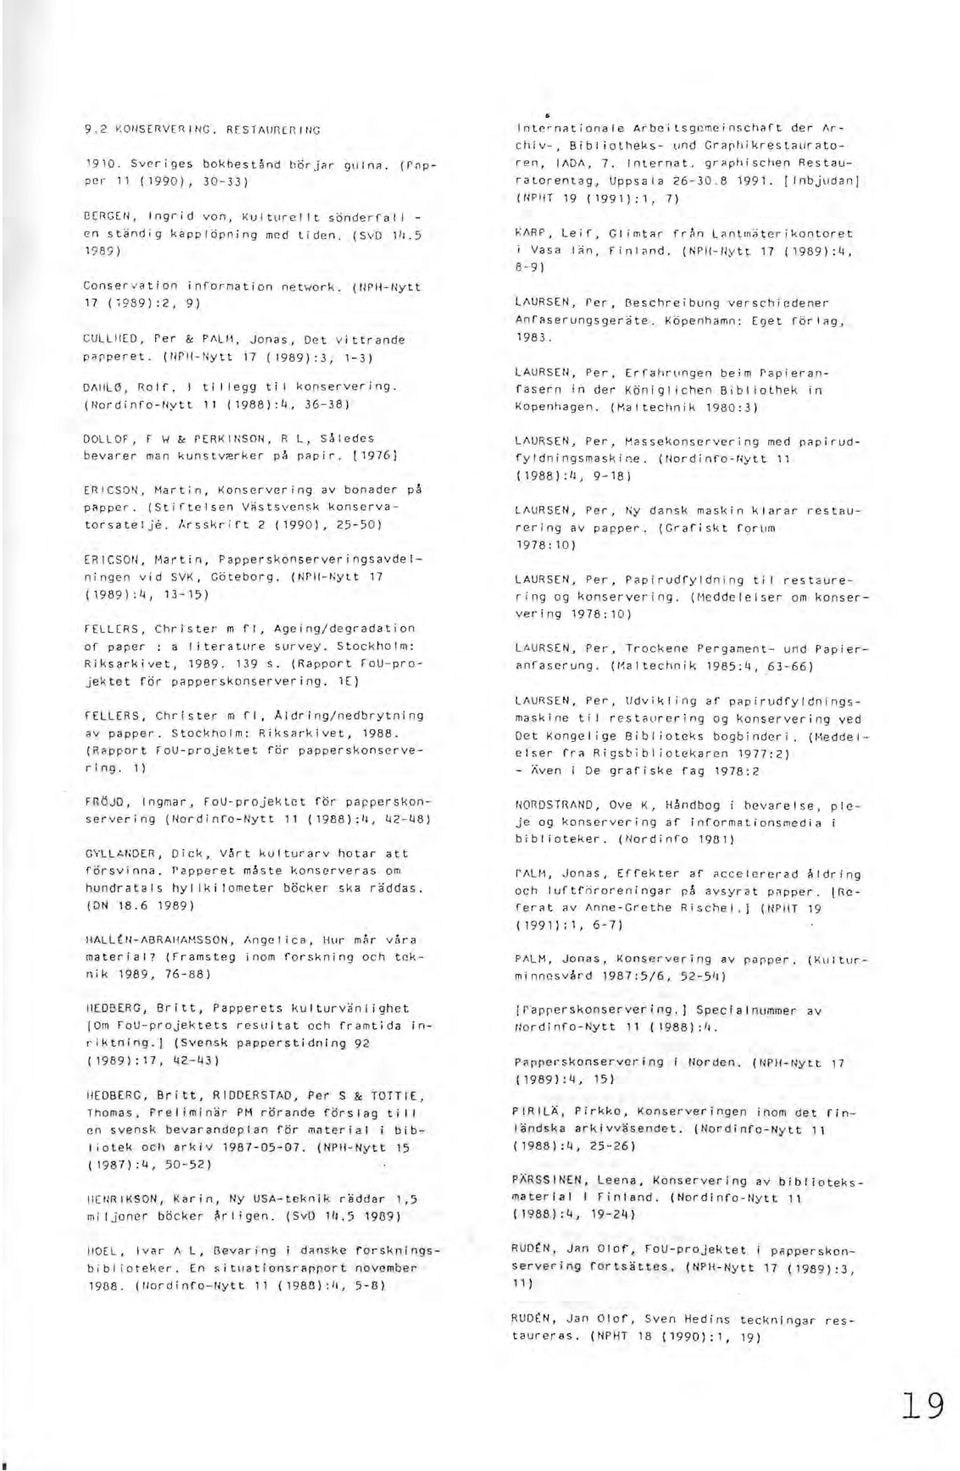 (llordinfo-ilytt 11 (1988):4,36-38) Internationale Arbeitsgcmeinschaft der Archiv-, Bibi iotheks- und Graphikrestauratoren, lada, 7. Internat. graphischen Restauratorentag, Uppsala 26-30.8 1991.